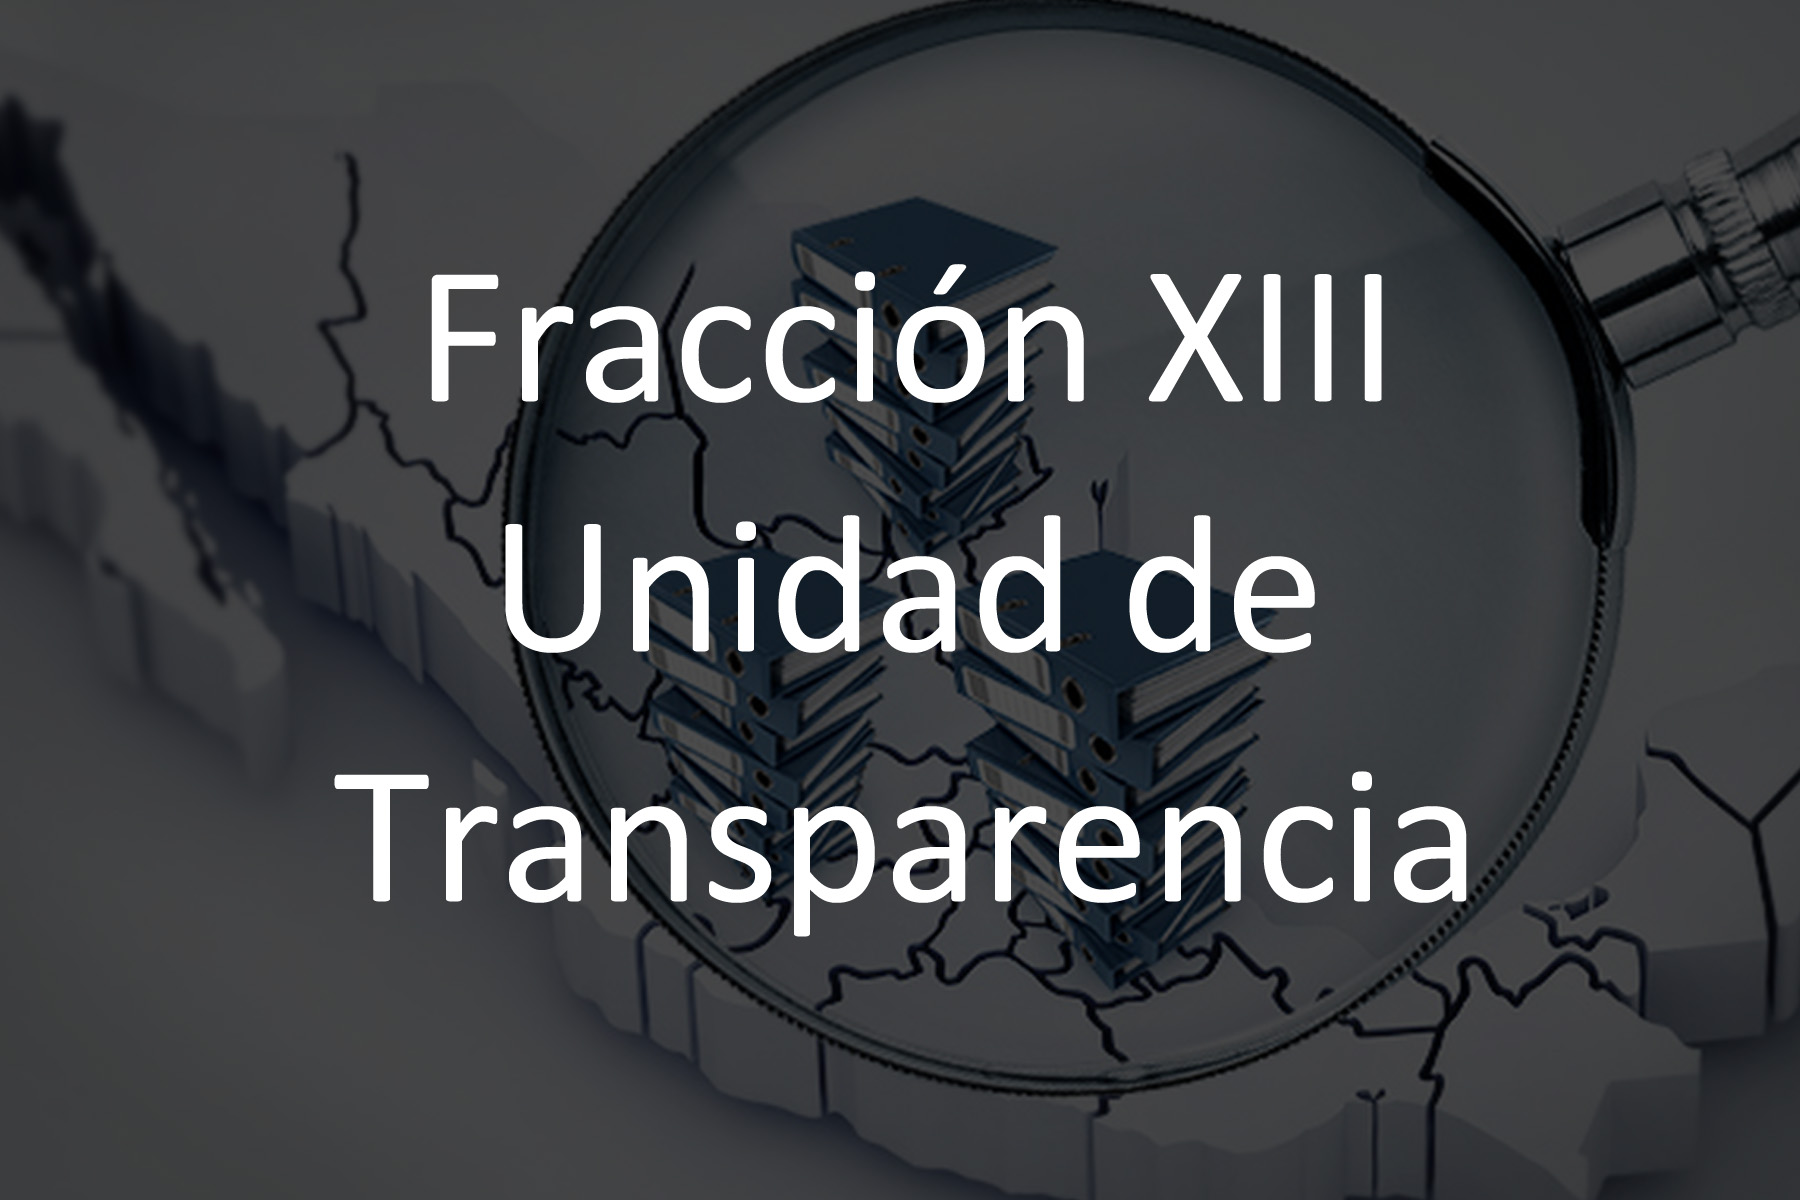 Fracción XIII Unidad de Transparencia